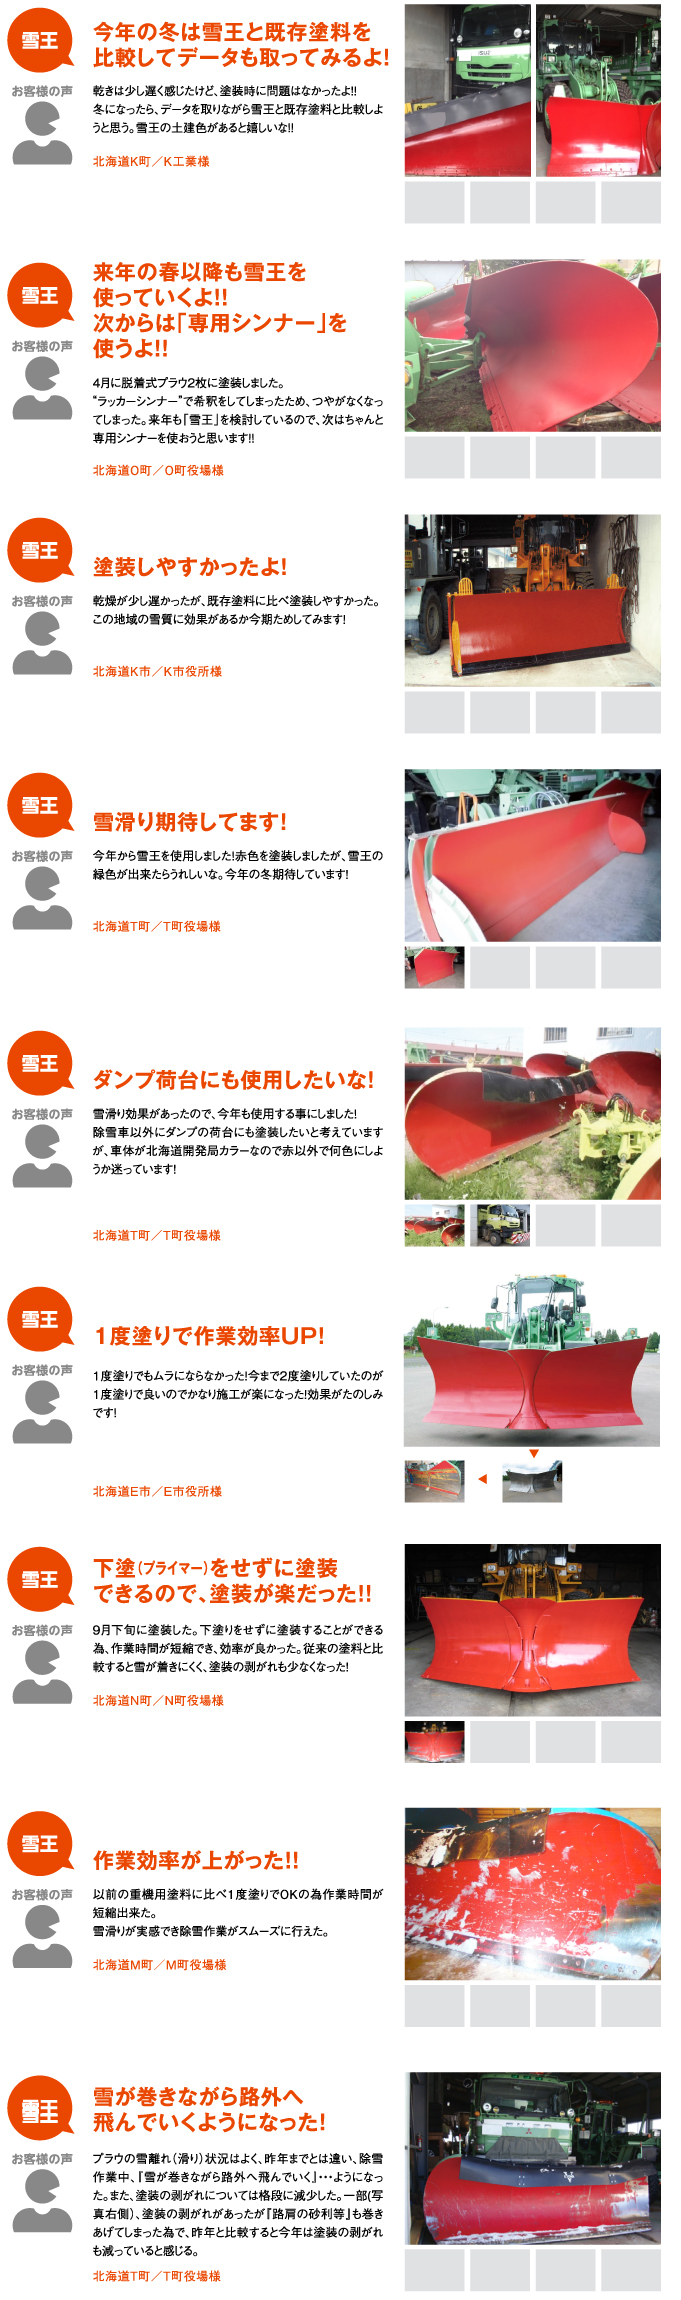 弊社塗料ブランドである「雪王」の北海道での塗装実績を紹介しています